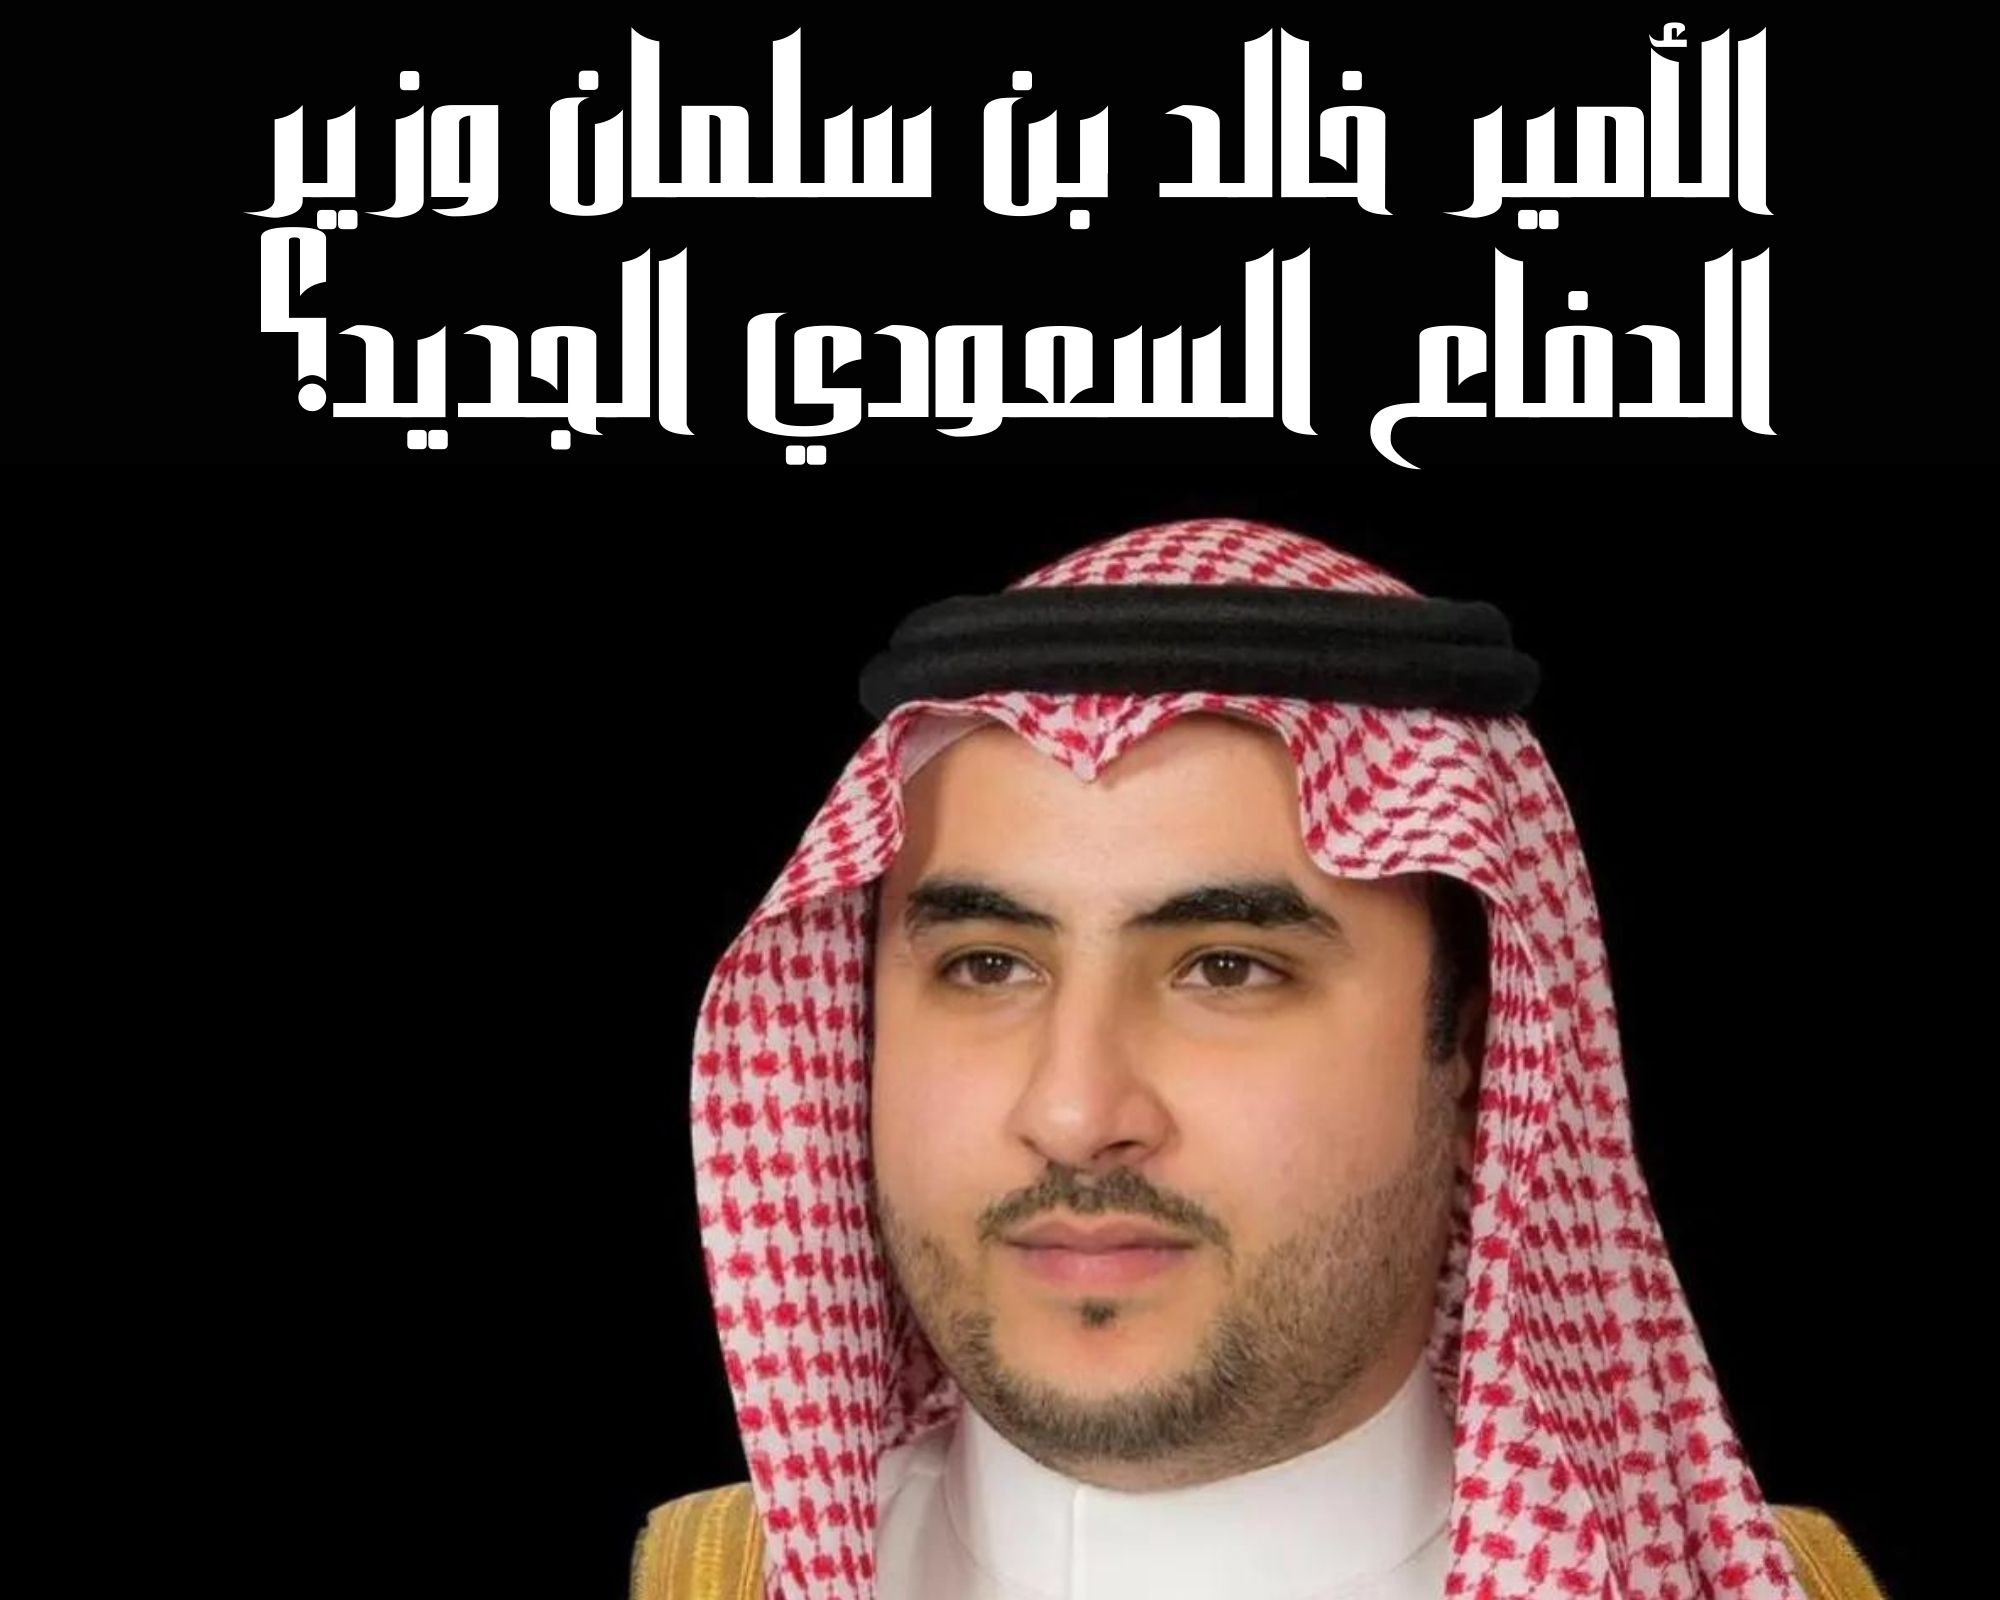 الأمير خالد بن سلمان وزير الدفاع السعودي الجديد؟ بعد التعديل الوزاري الجديد